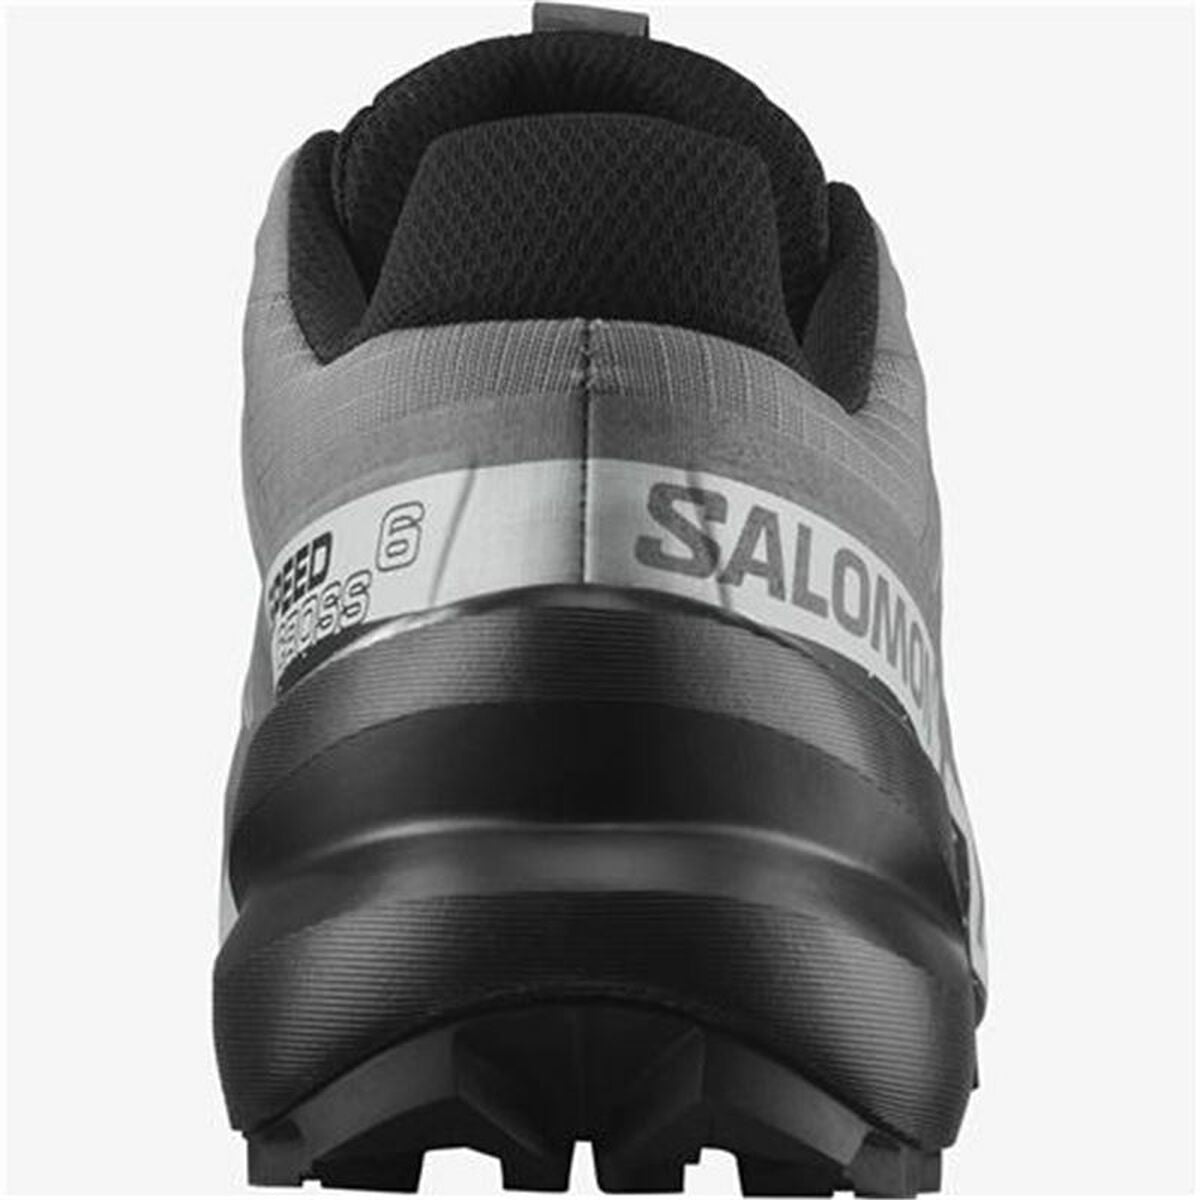 Kaufe Laufschuhe für Erwachsene Salomon Trail Speedcross 6 Grau bei AWK Flagship um € 137.00